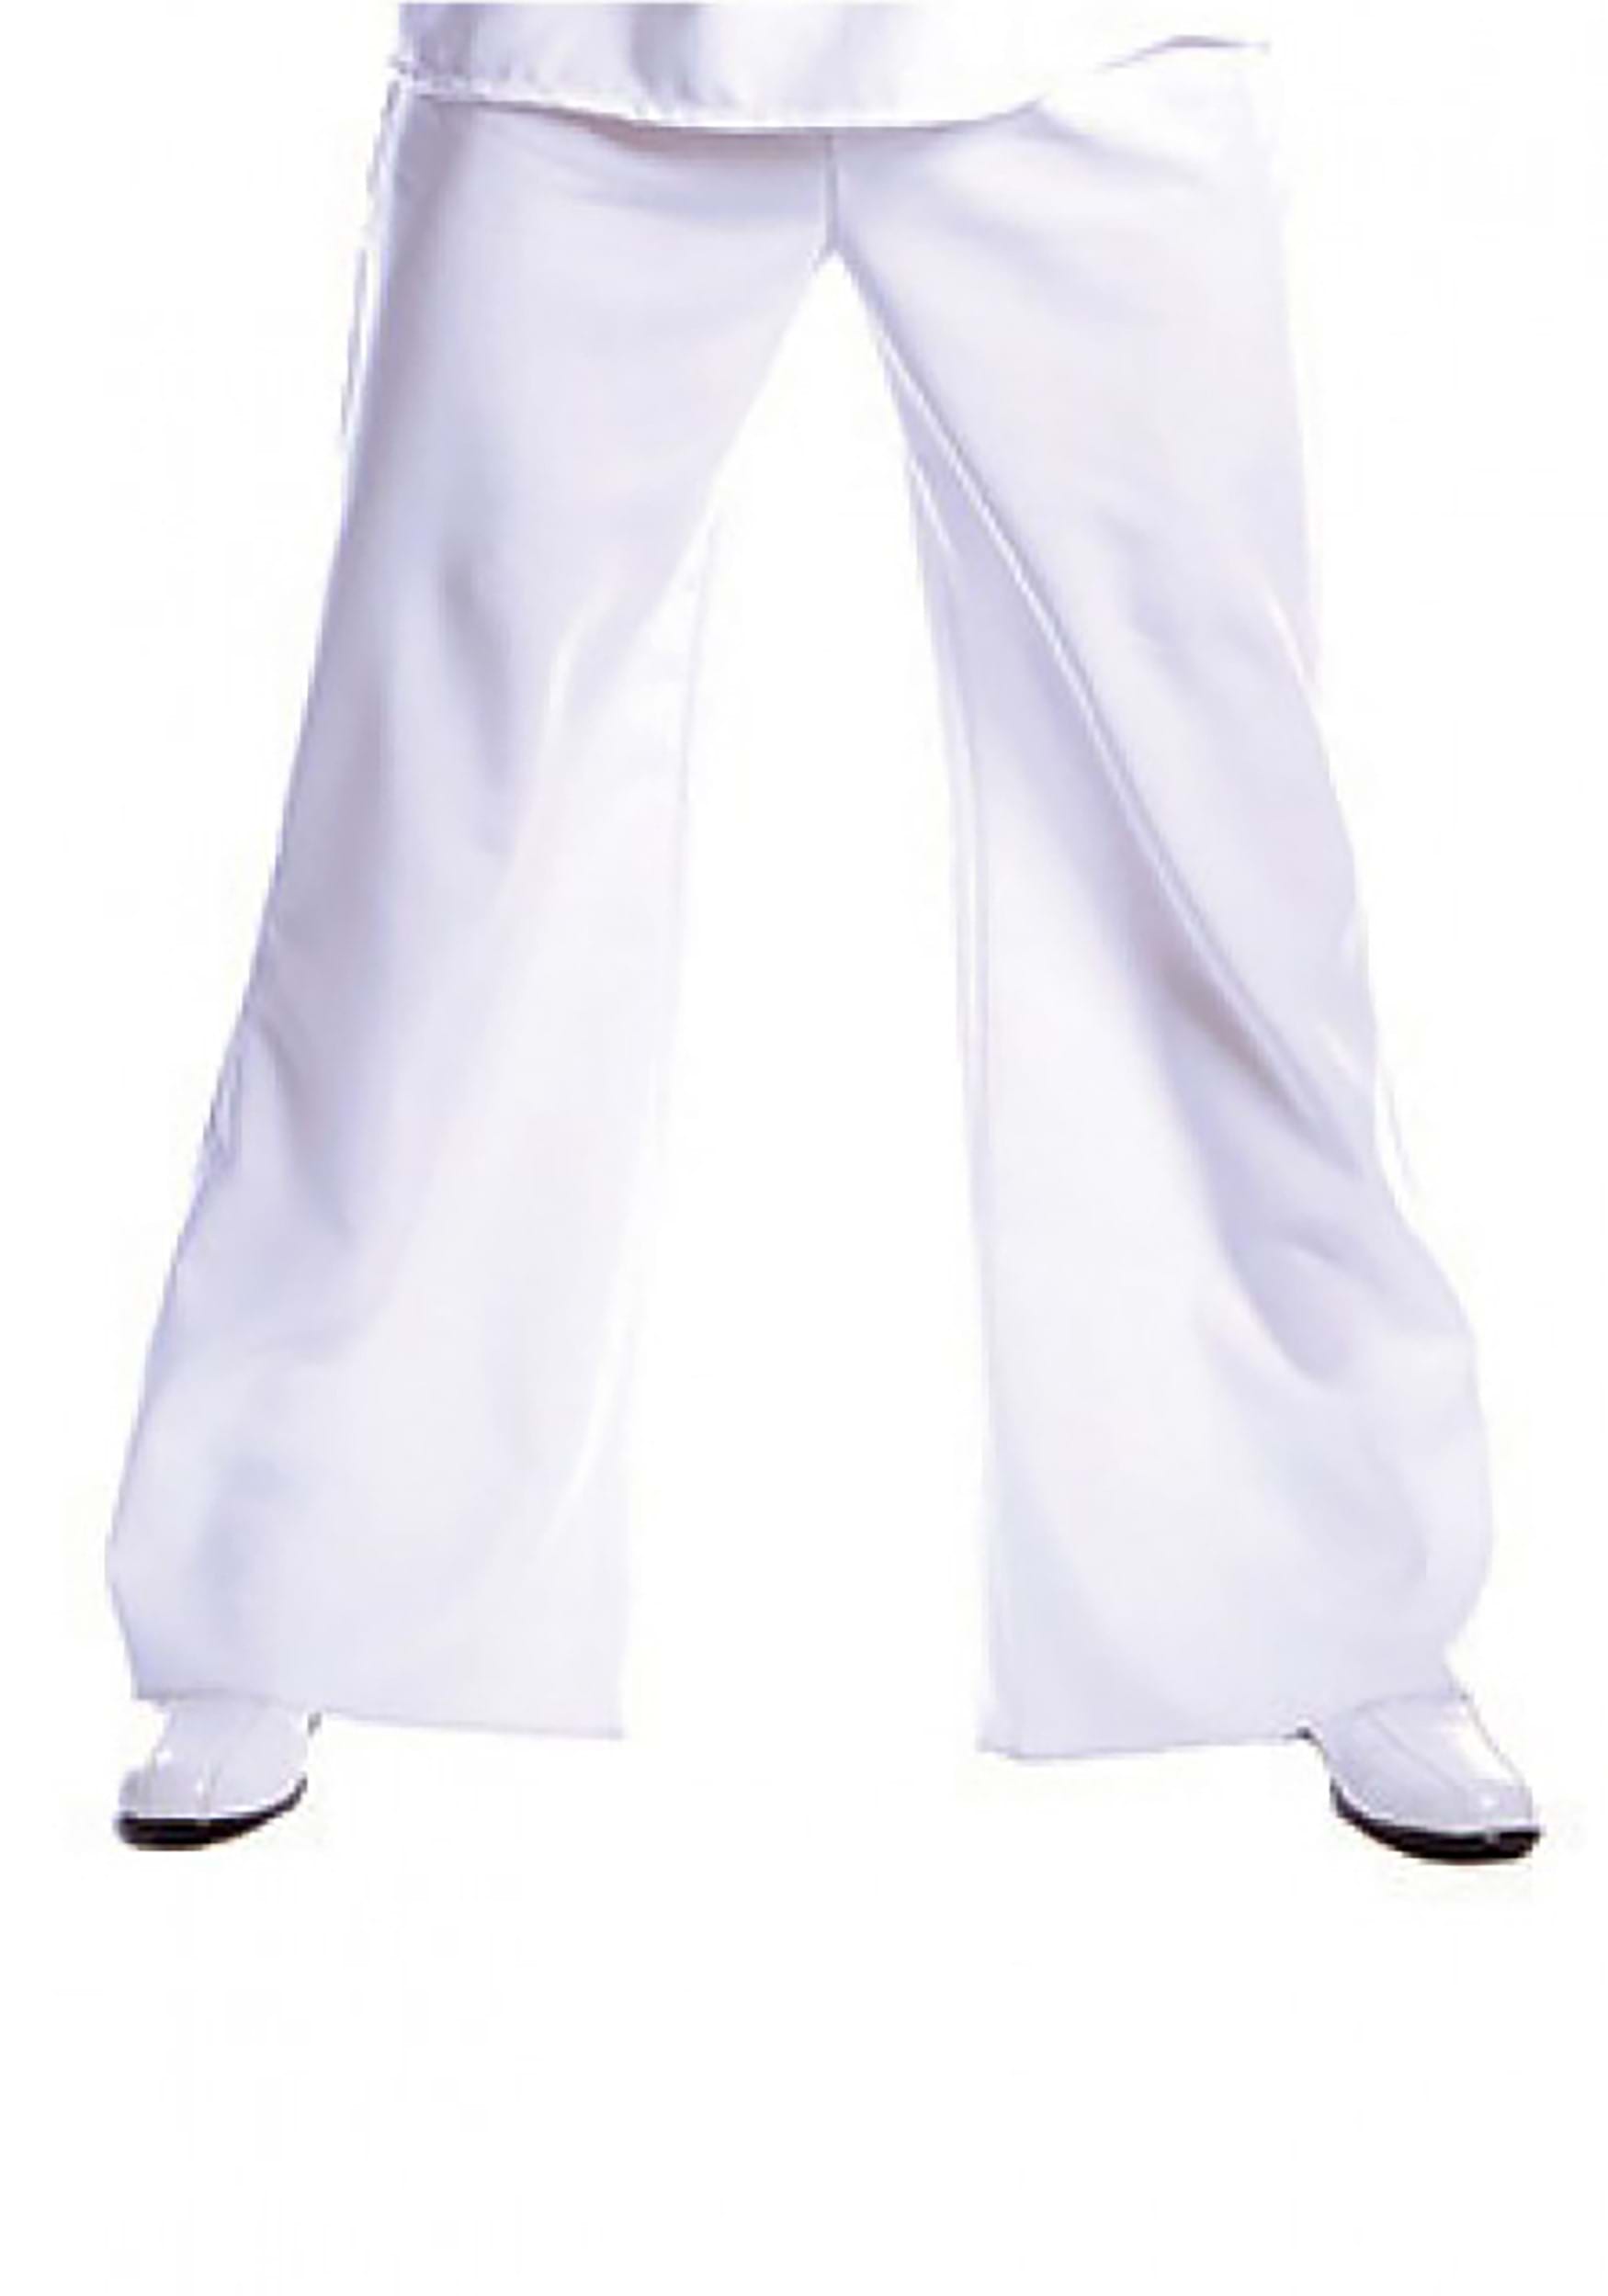 Plus Size Men's Bell Bottom Sailor Fancy Dress Costume Pants